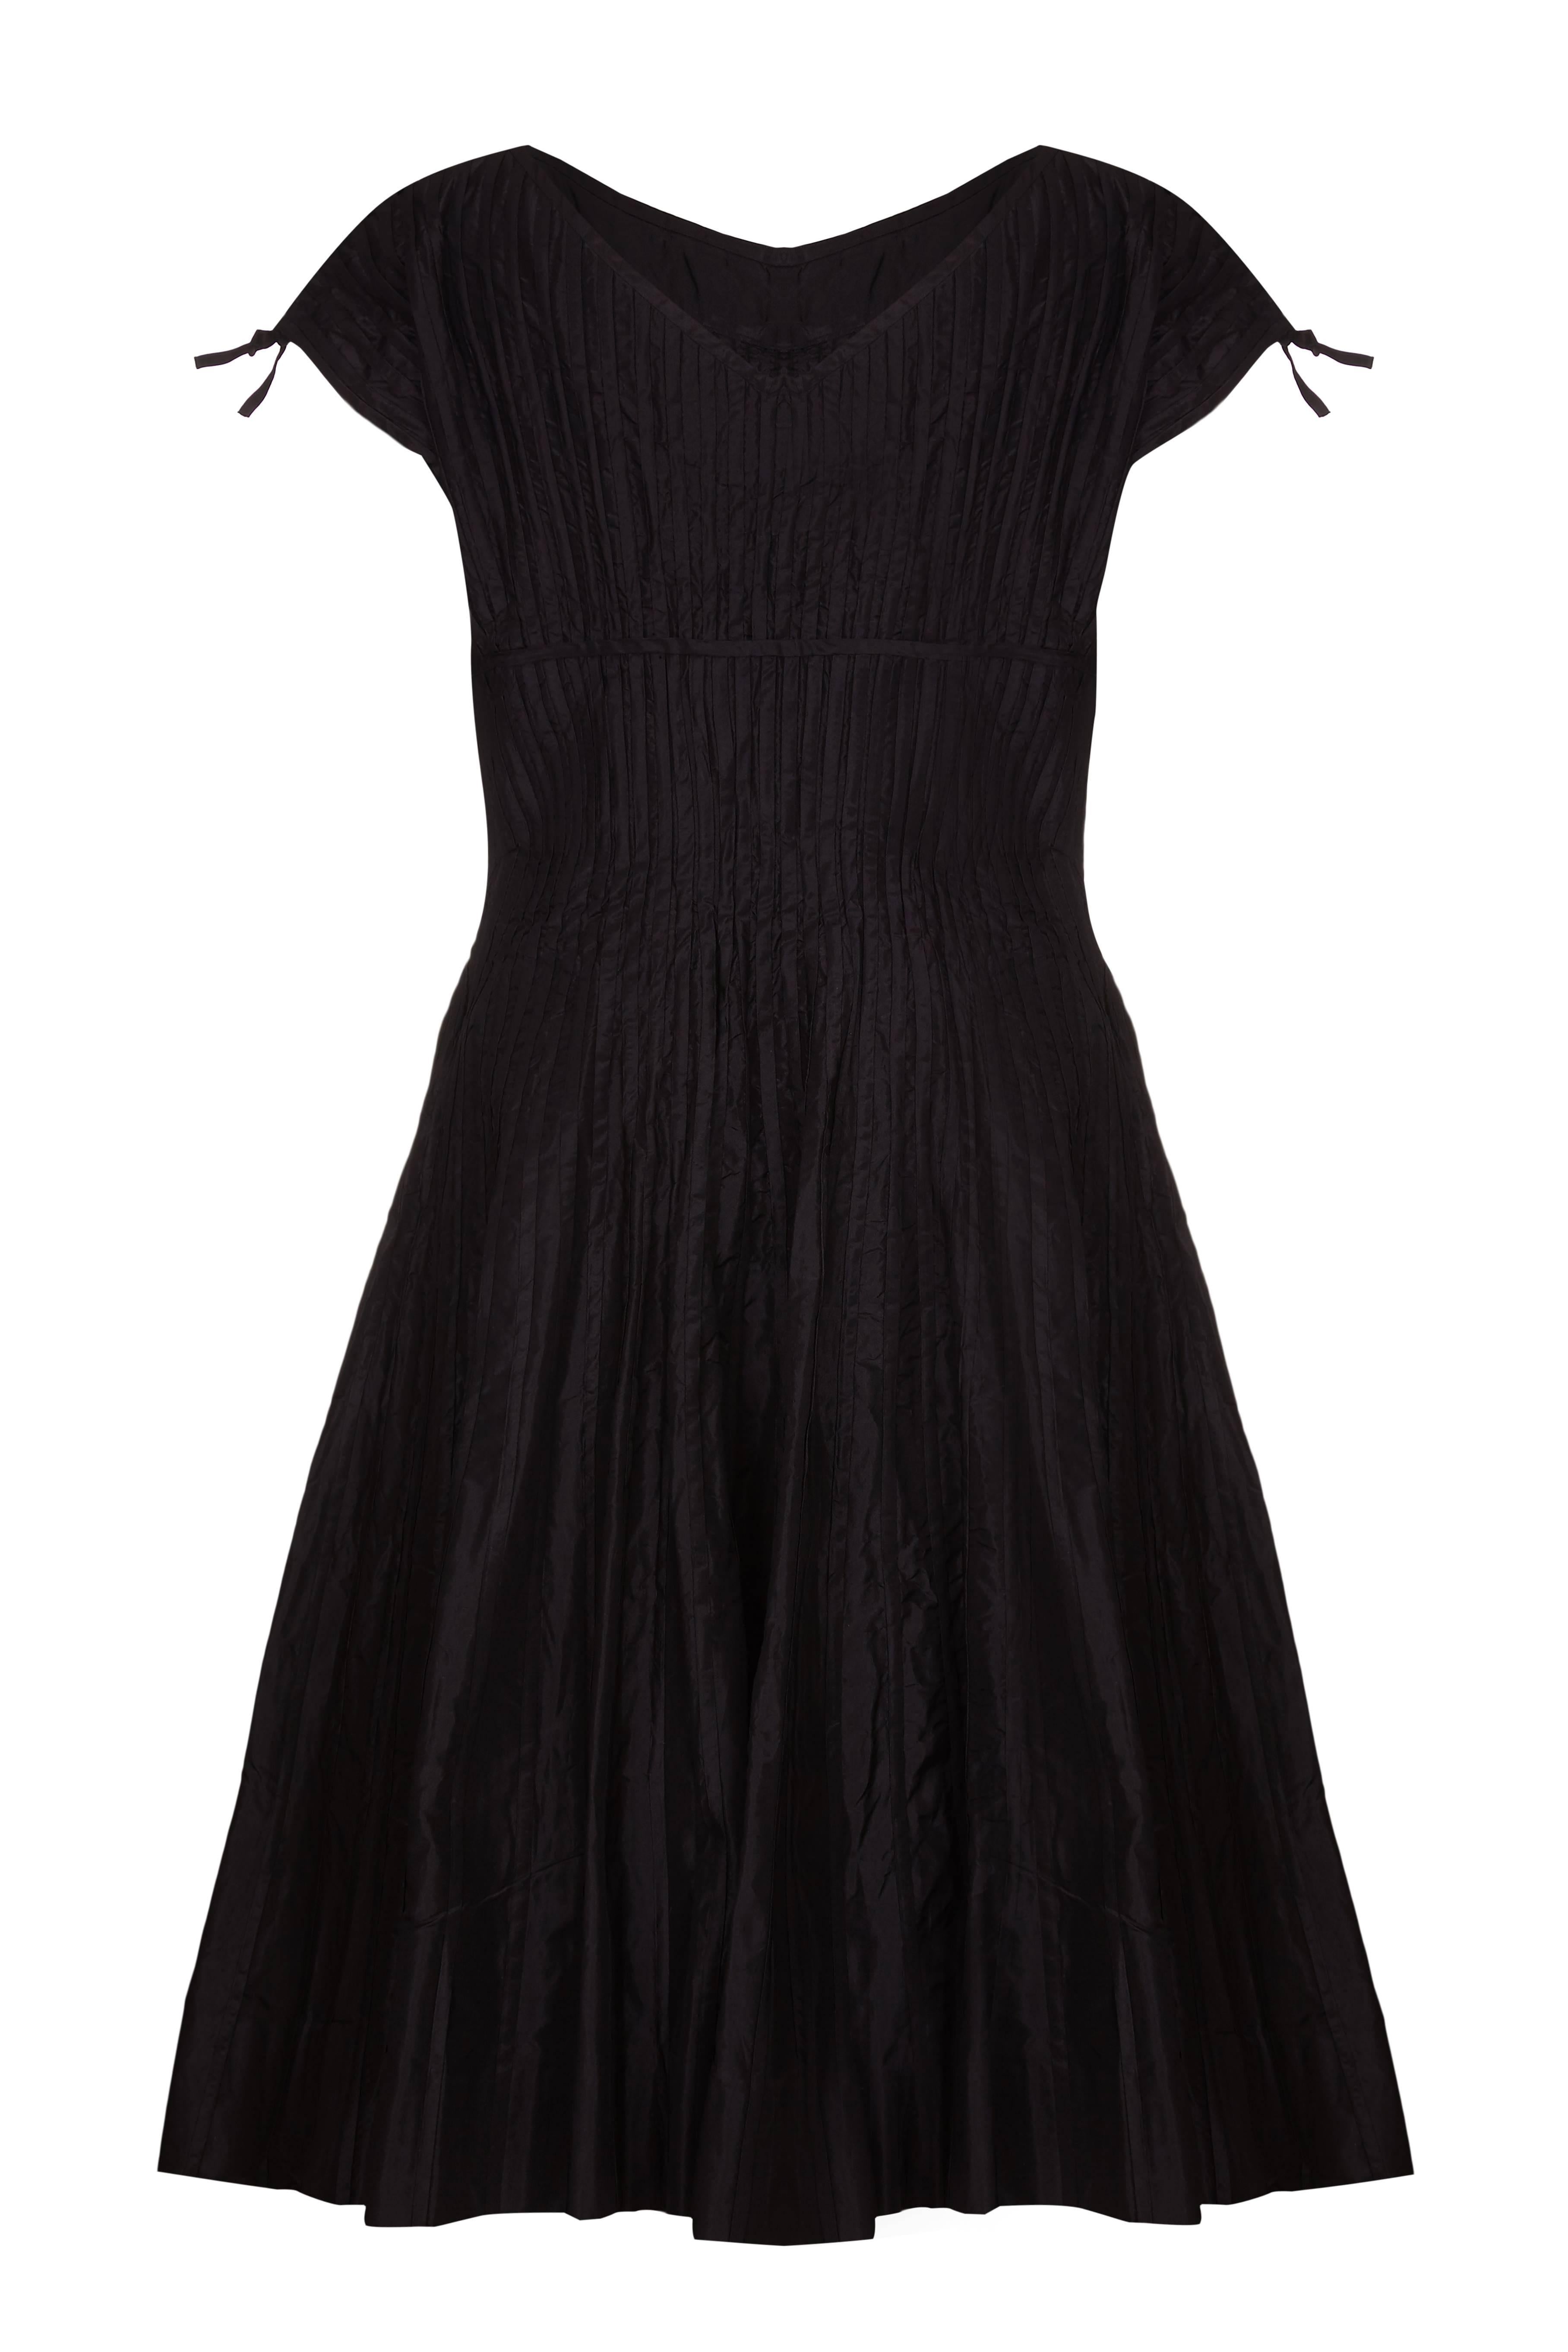 Cette magnifique robe en soie noire du début des années 1950 a probablement été réalisée par Omar Kiam pour le créateur Ben Reig, une marque réputée à l'époque pour ses lignes simples et élégantes et la qualité luxueuse de ses tissus. Le tissu de